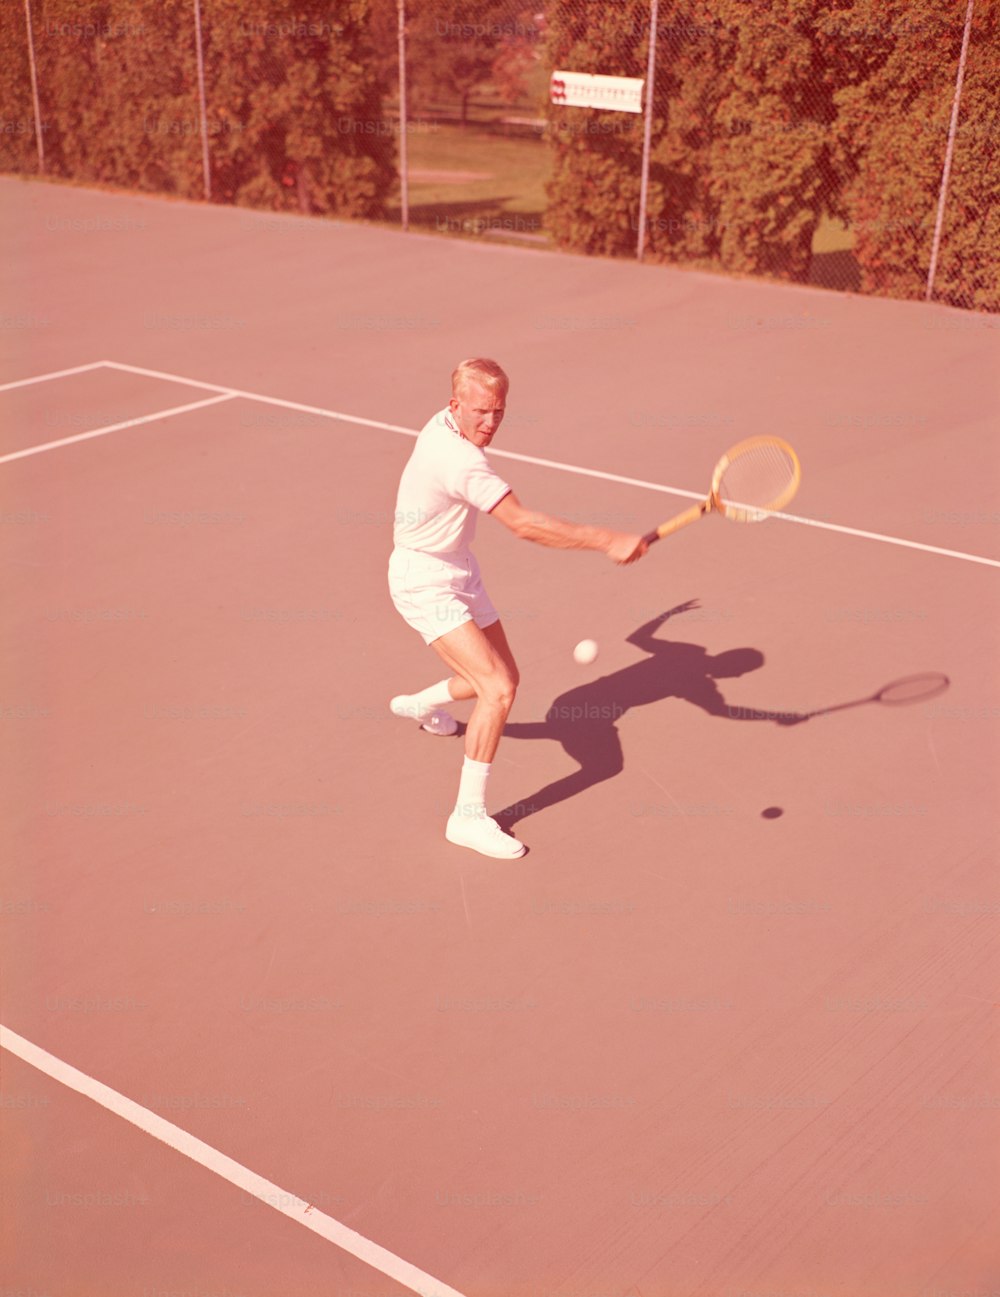 UNITED STATES - CIRCA 1950s:  Man playing tennis.